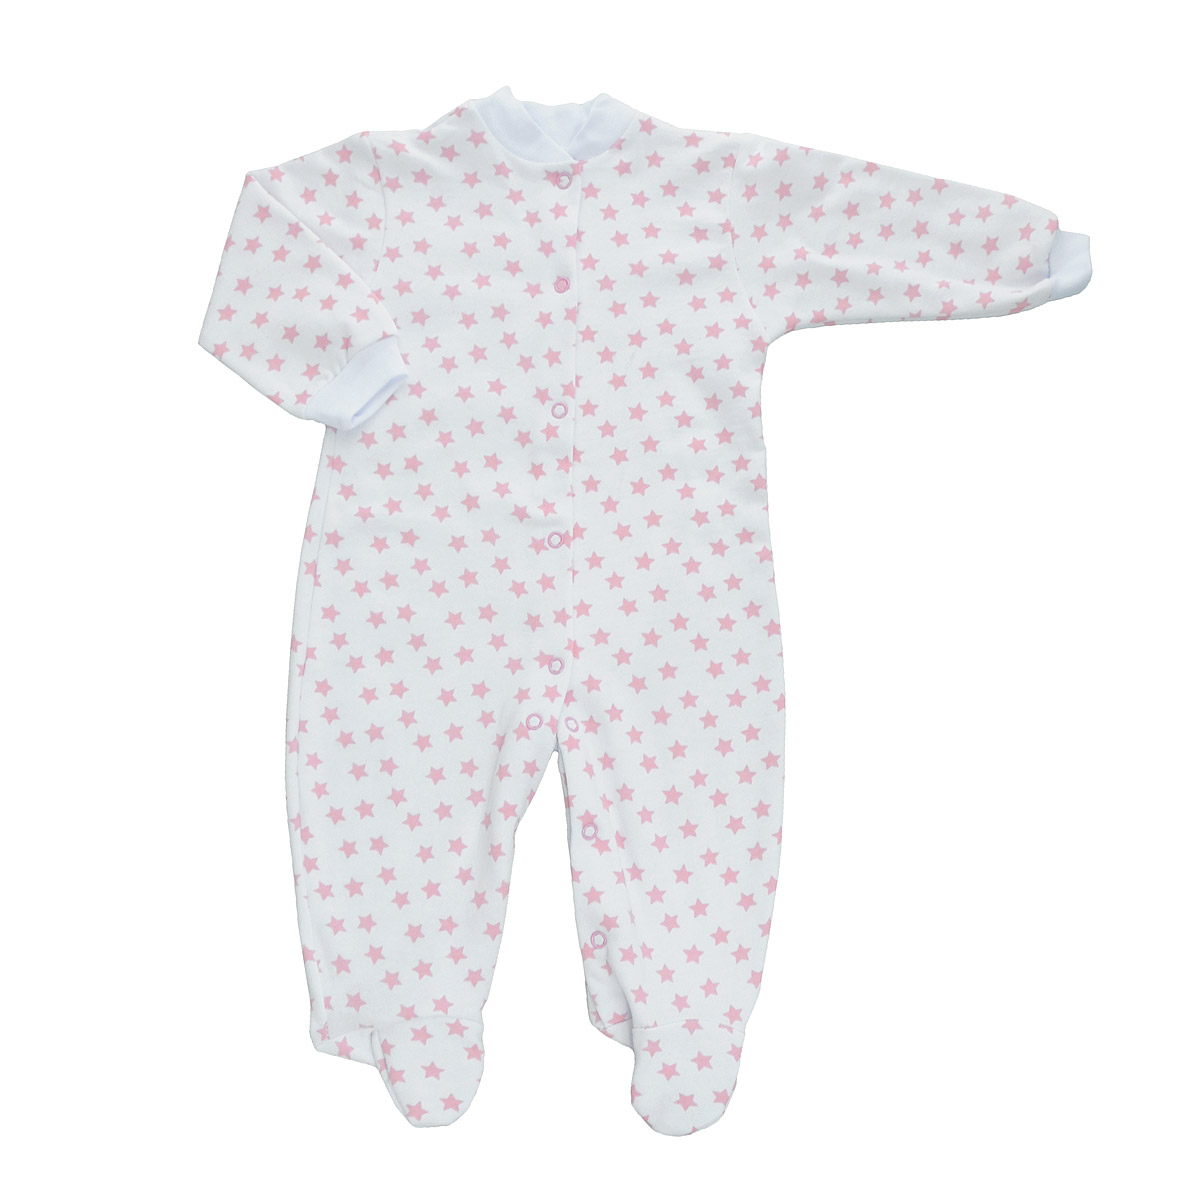 Комбинезон детский Трон-Плюс, цвет: белый, розовый, рисунок звезды. 5821. Размер 80, 12 месяцев